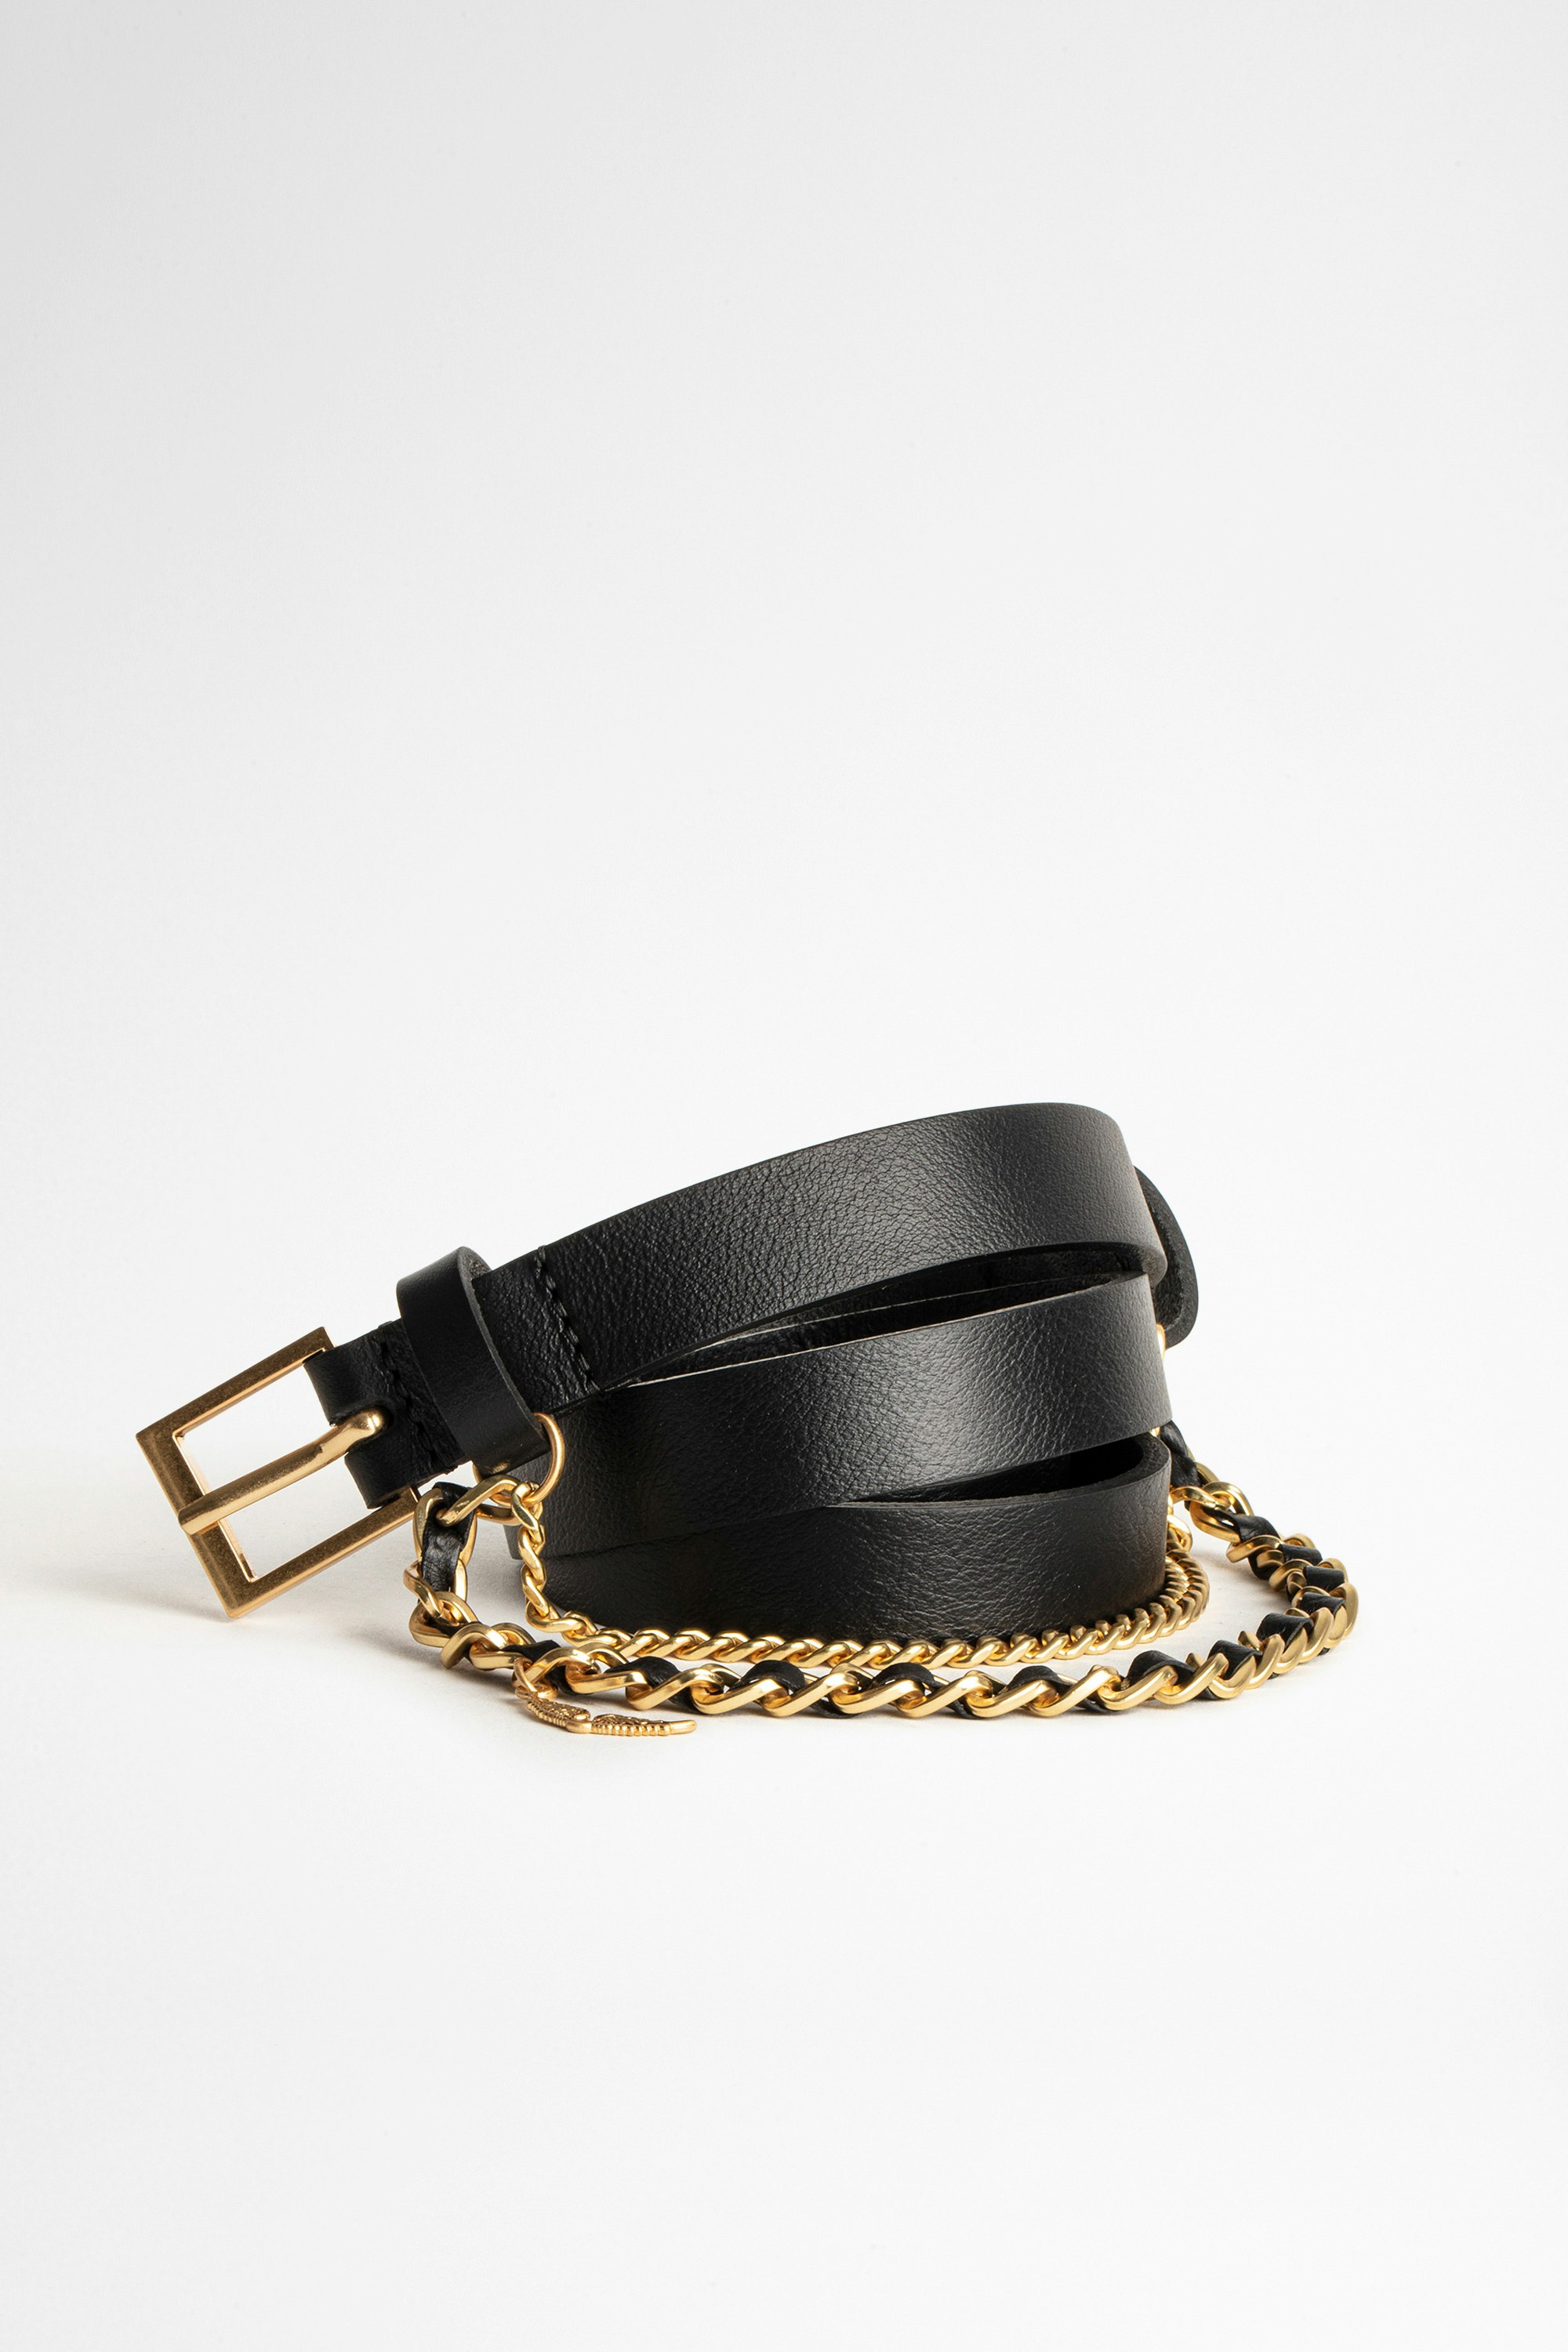 Cinturón Rock Chain Cinturón de piel negra de mujer de Zadig&Voltaire con cadena.